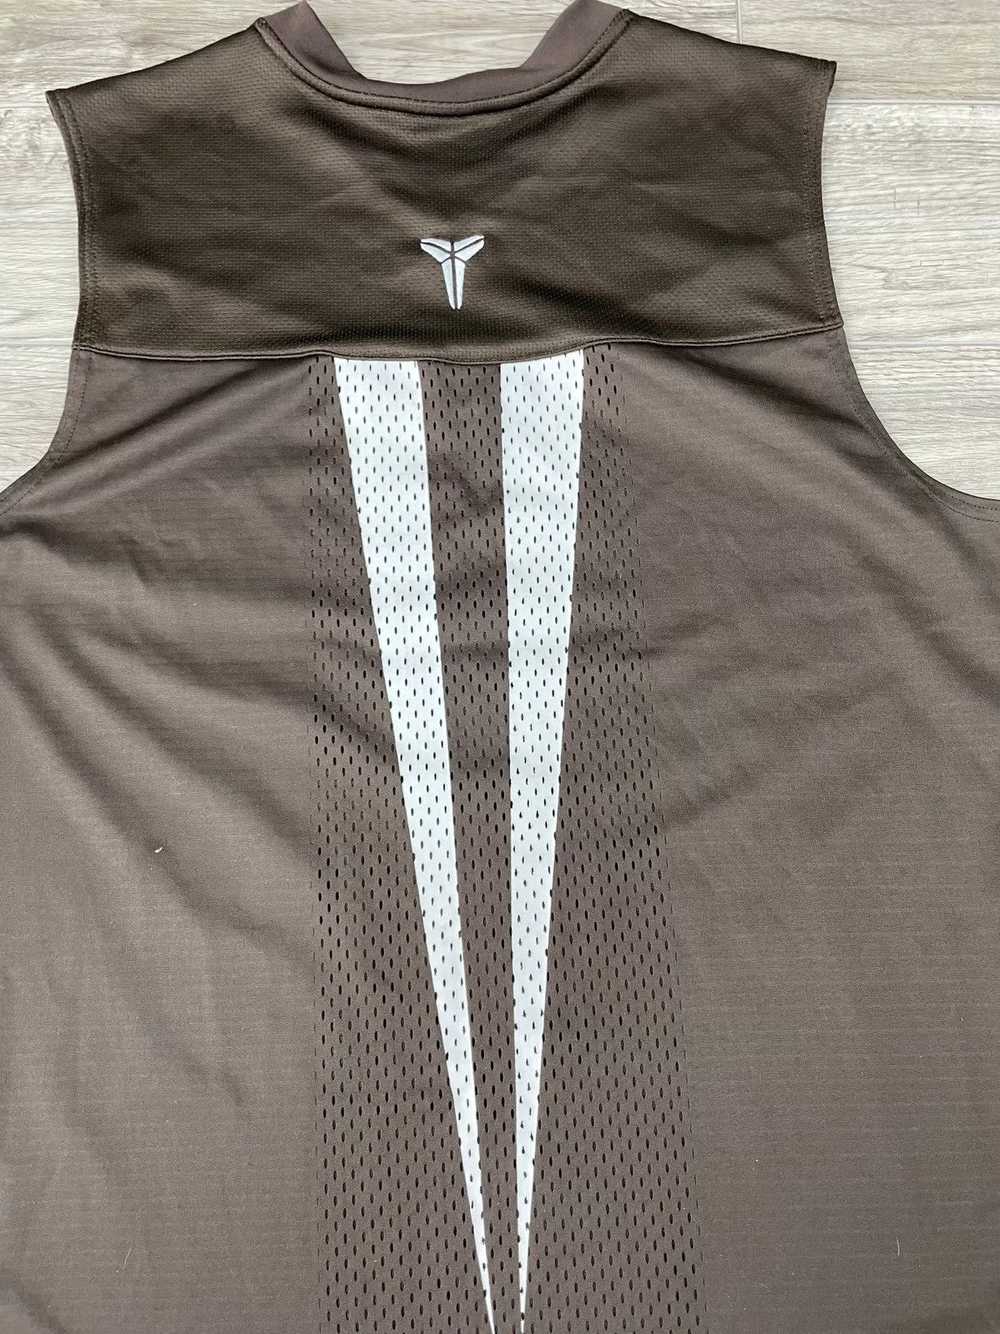 Kobe Mentality × Nike Kobe Brown Nike Sleeves Siz… - image 5